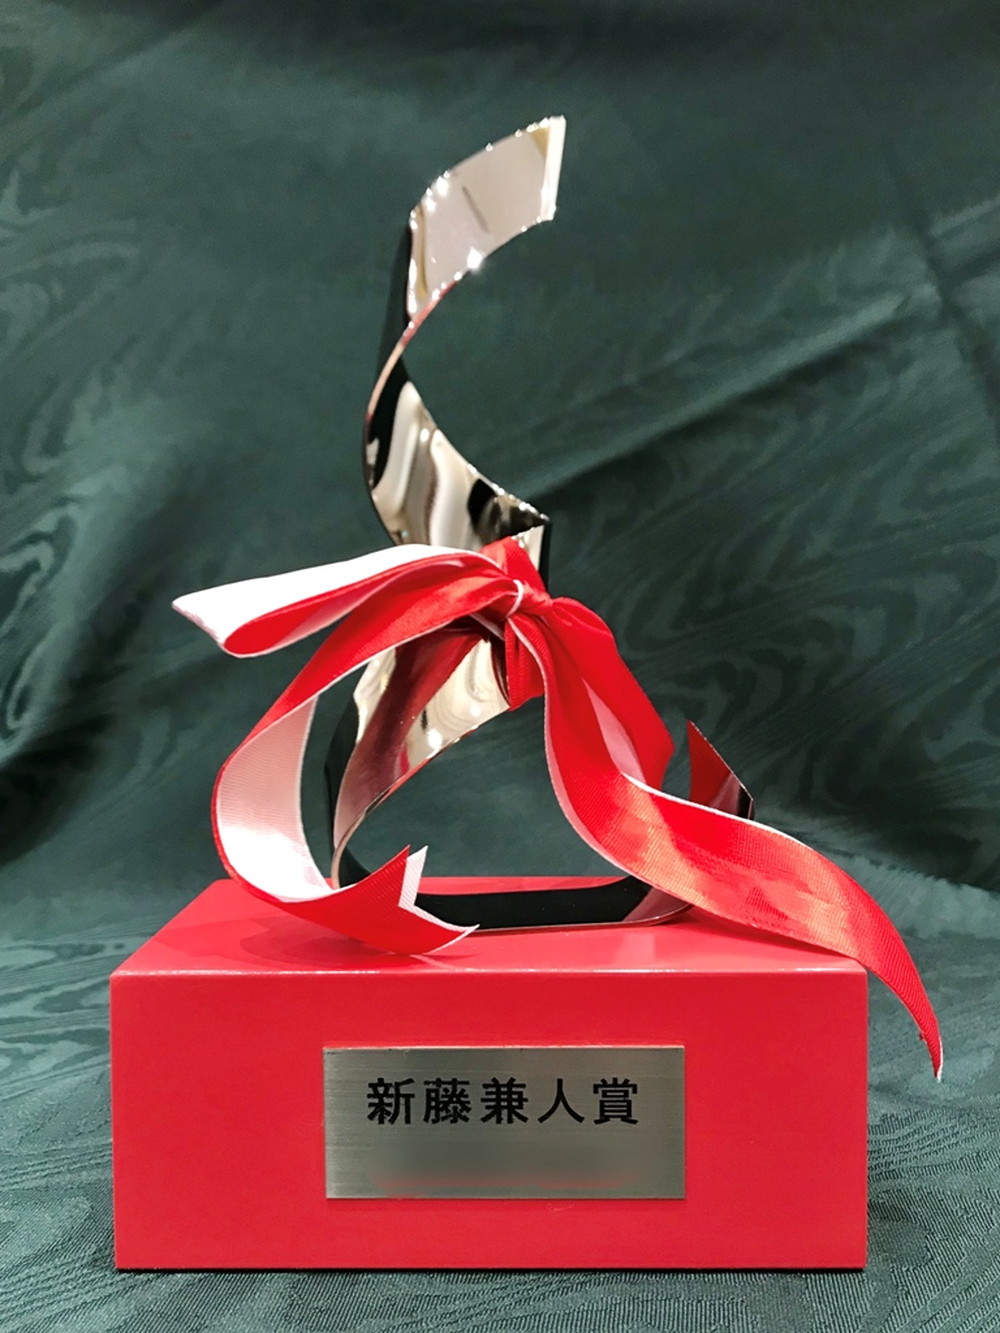 「新藤兼人賞」trophy